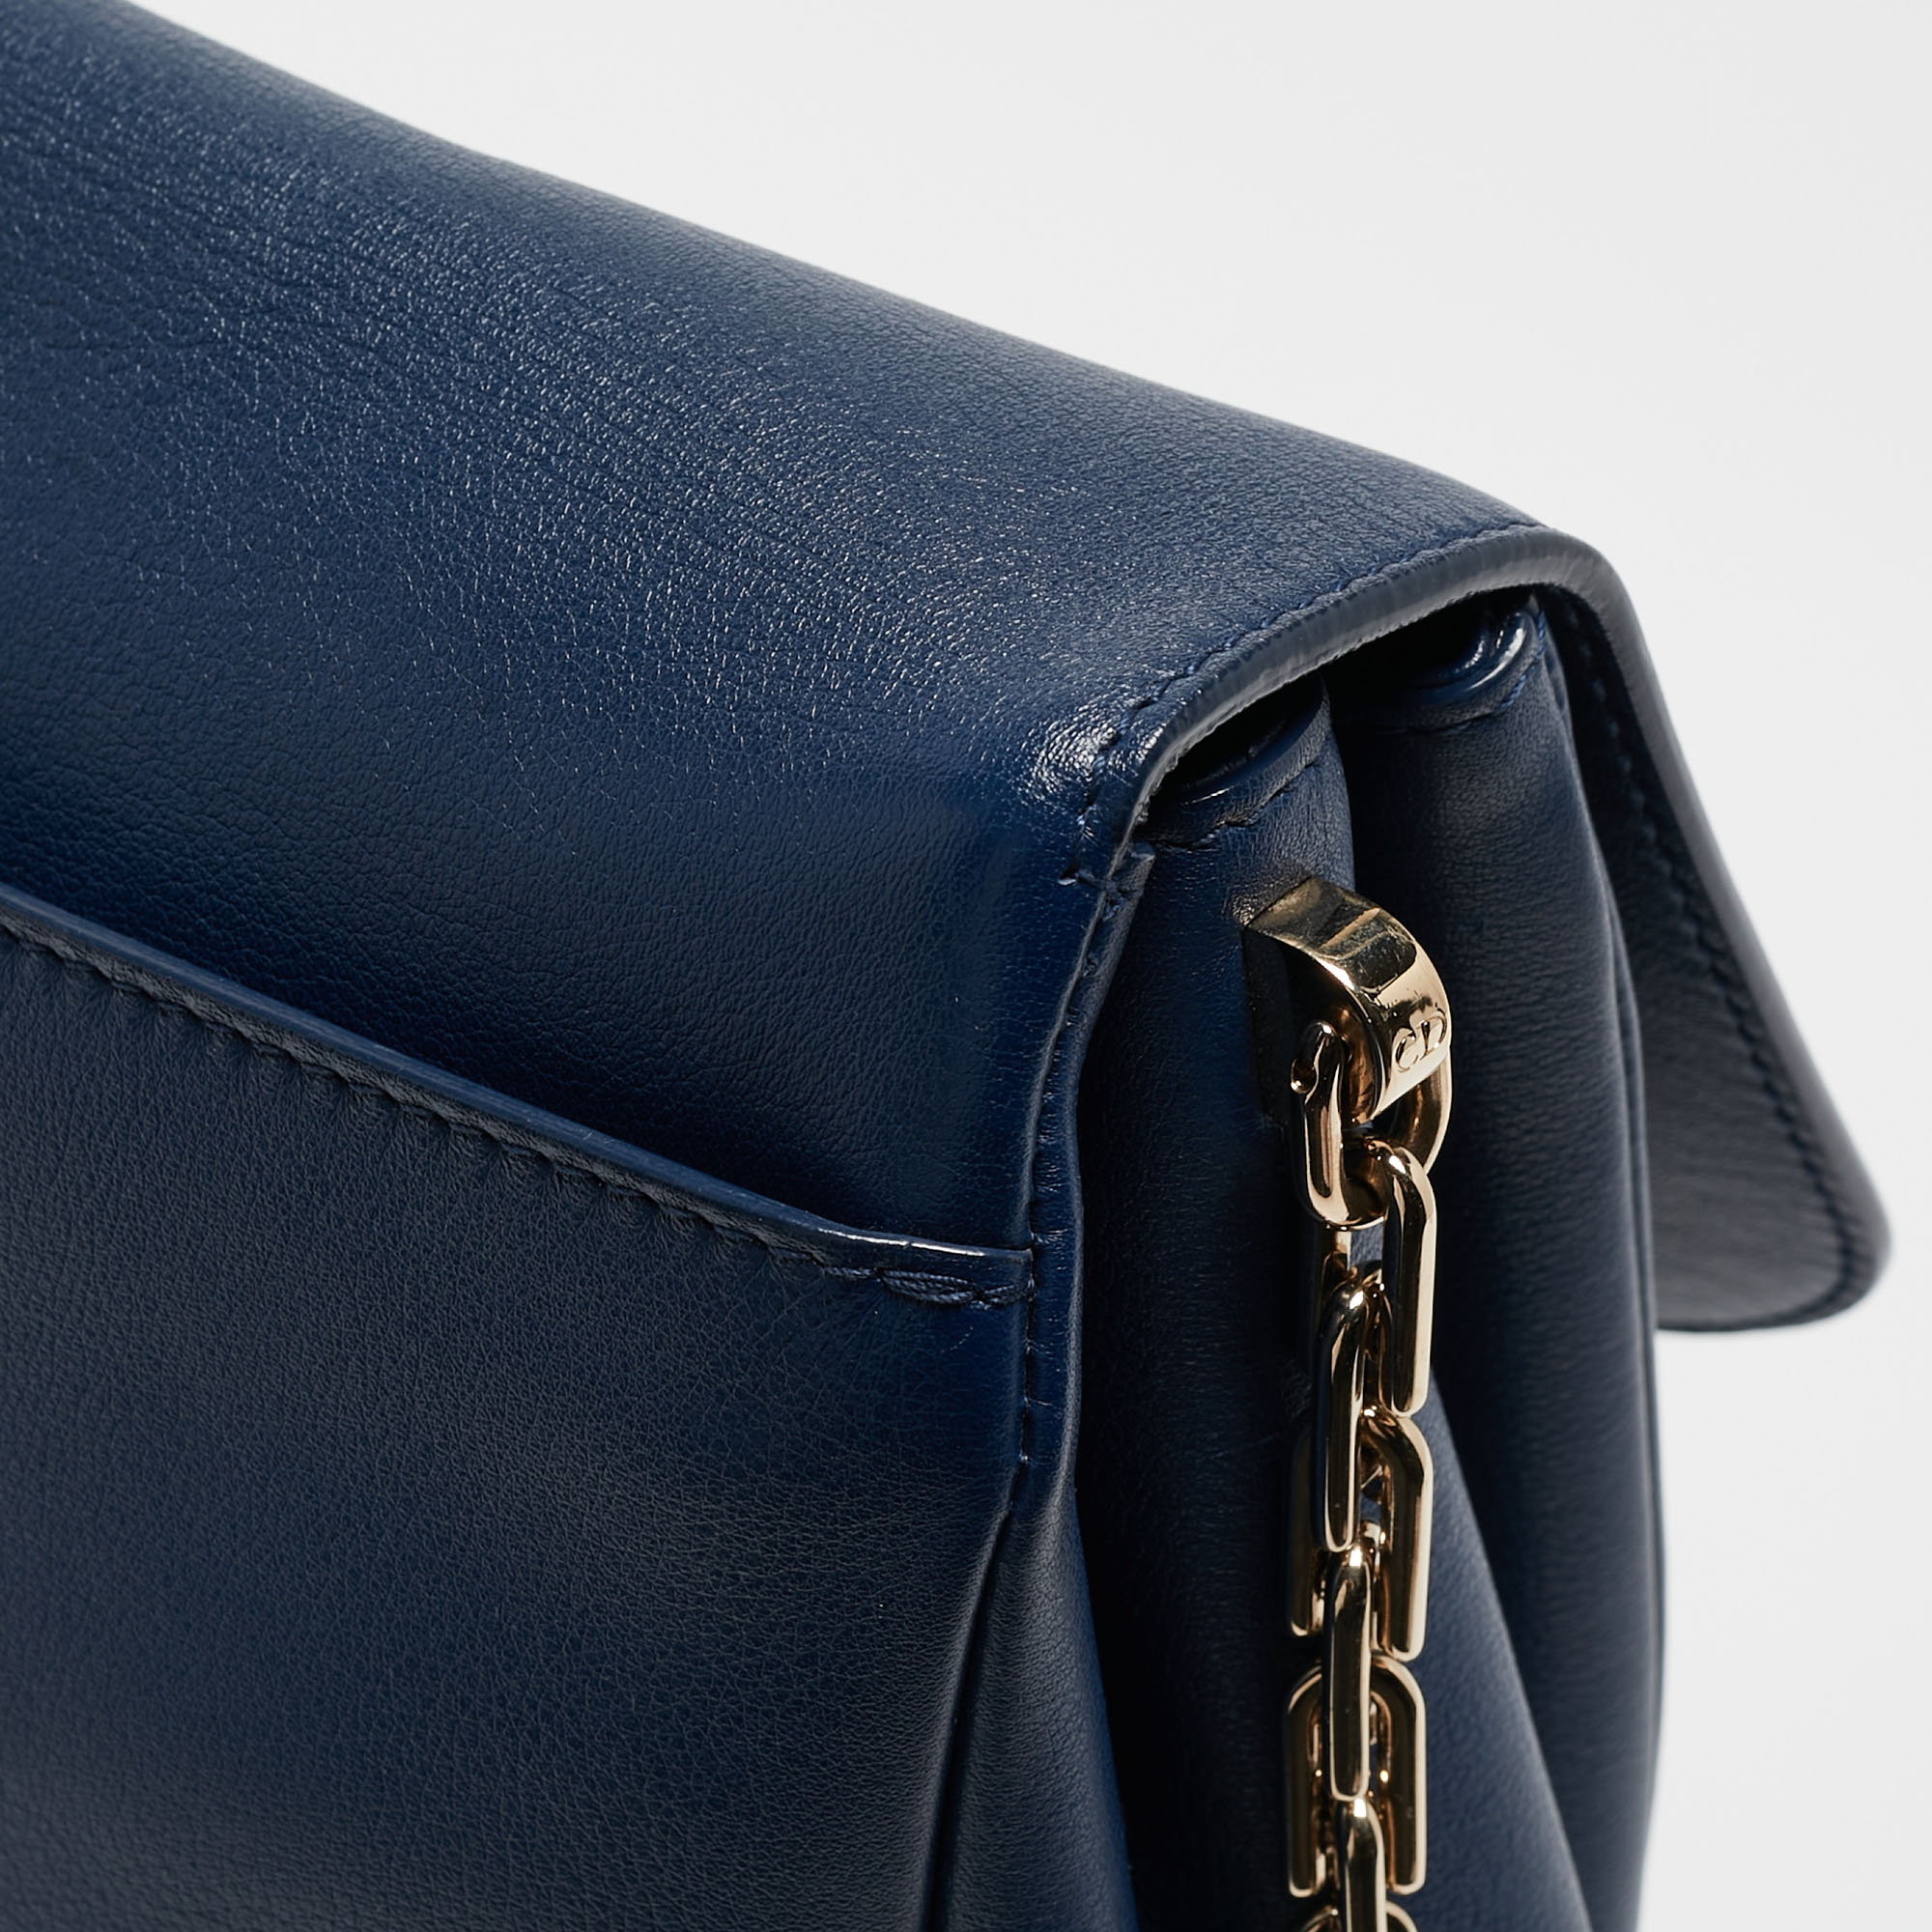 Dior Blue Leather Large Diorling Shoulder Bag